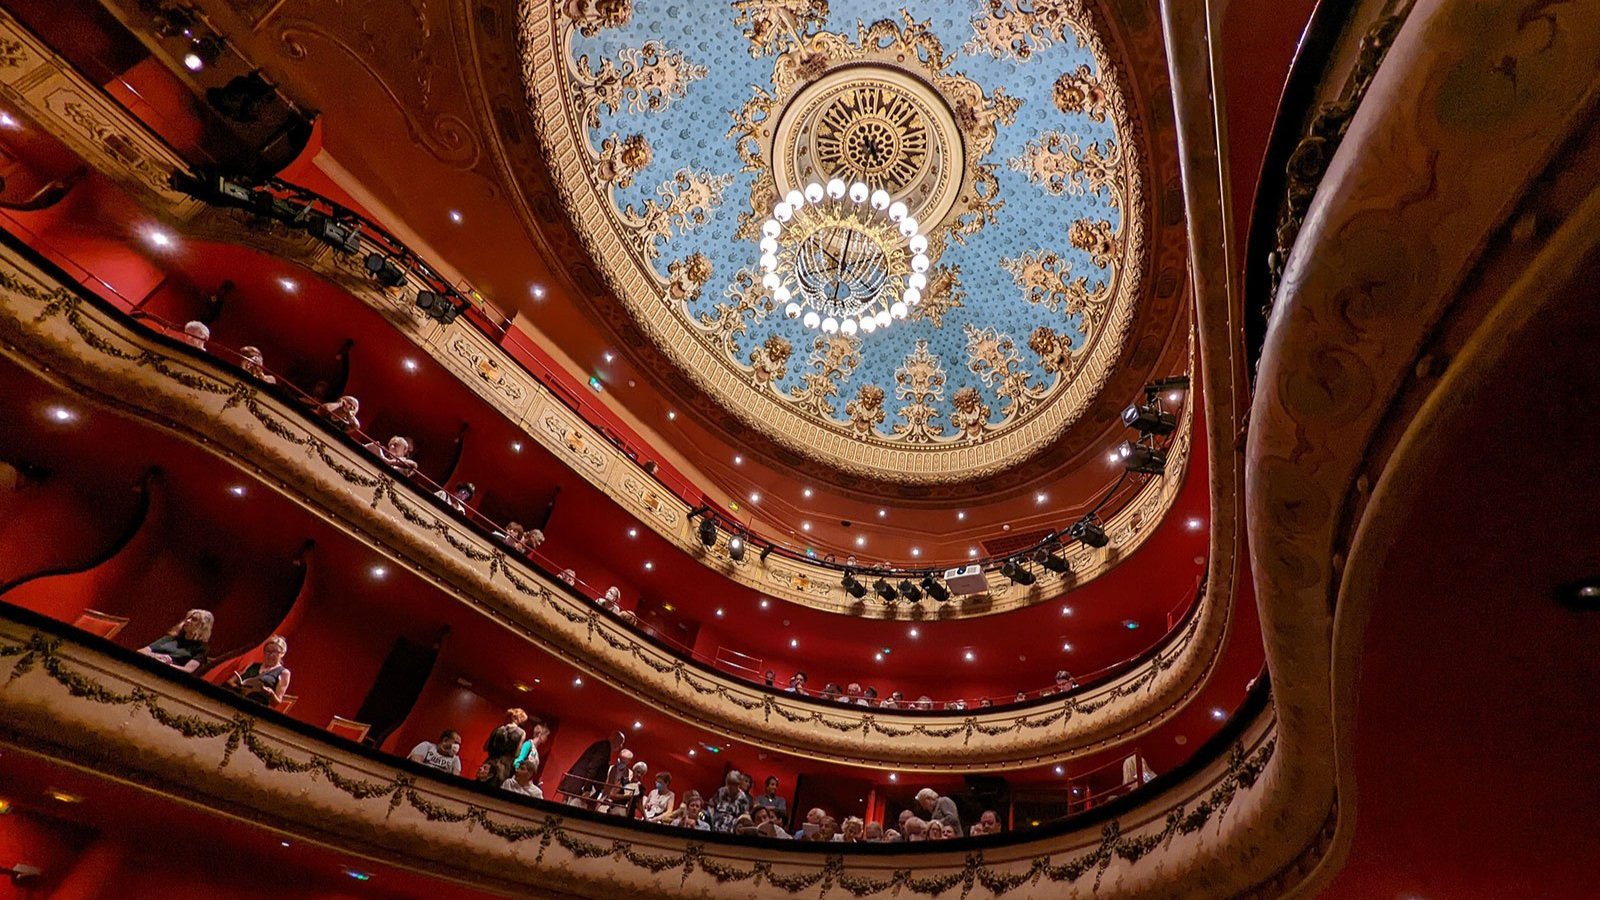 The magnificent interior of the Théâtre du Jeu de Paume